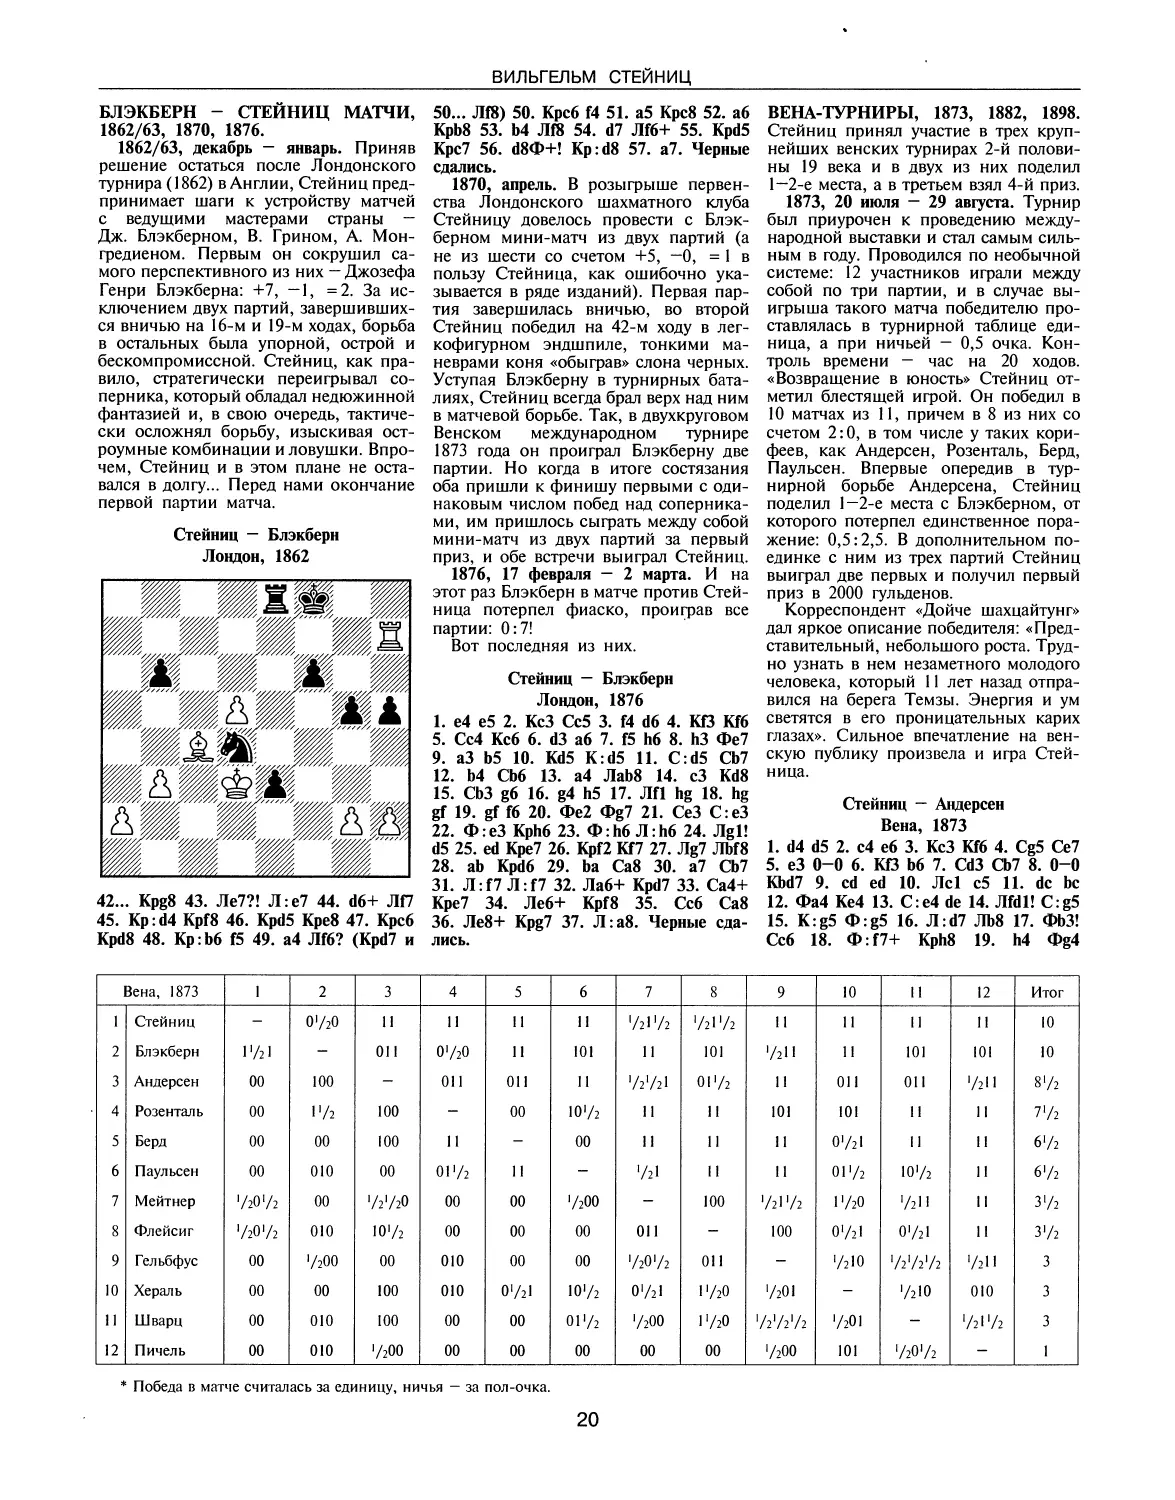 Блэкберн — Стейниц матчи, 1862/63, 1870, 1876
Вена-турниры, 1873, 1882, 1898